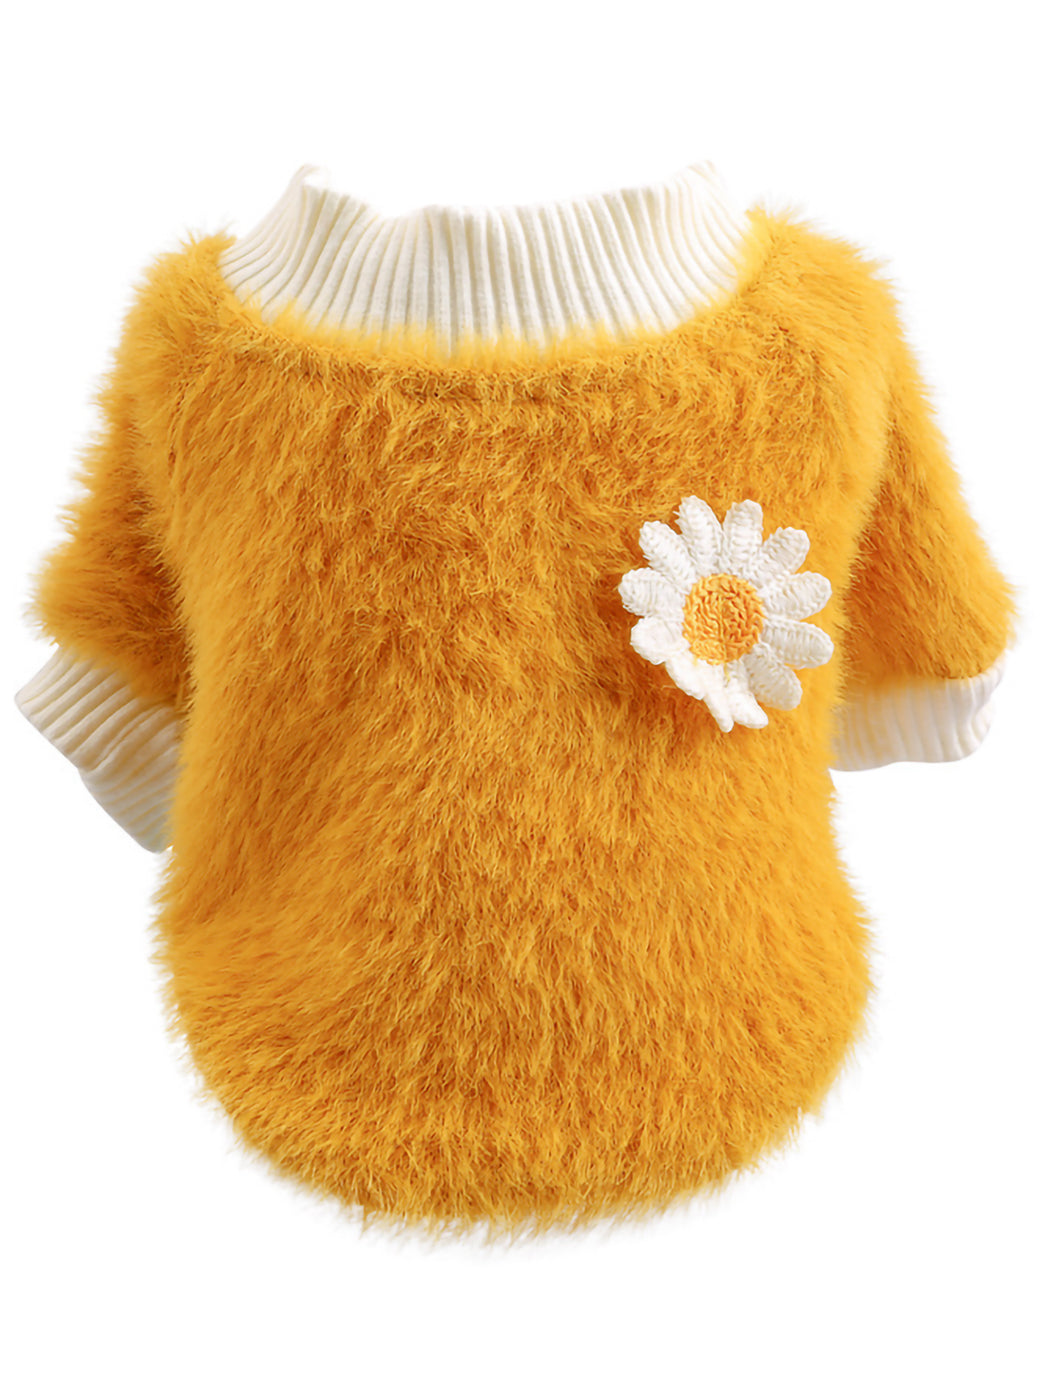 Pet Dog Fluffy Sweater Shirt | Flower Petal Design